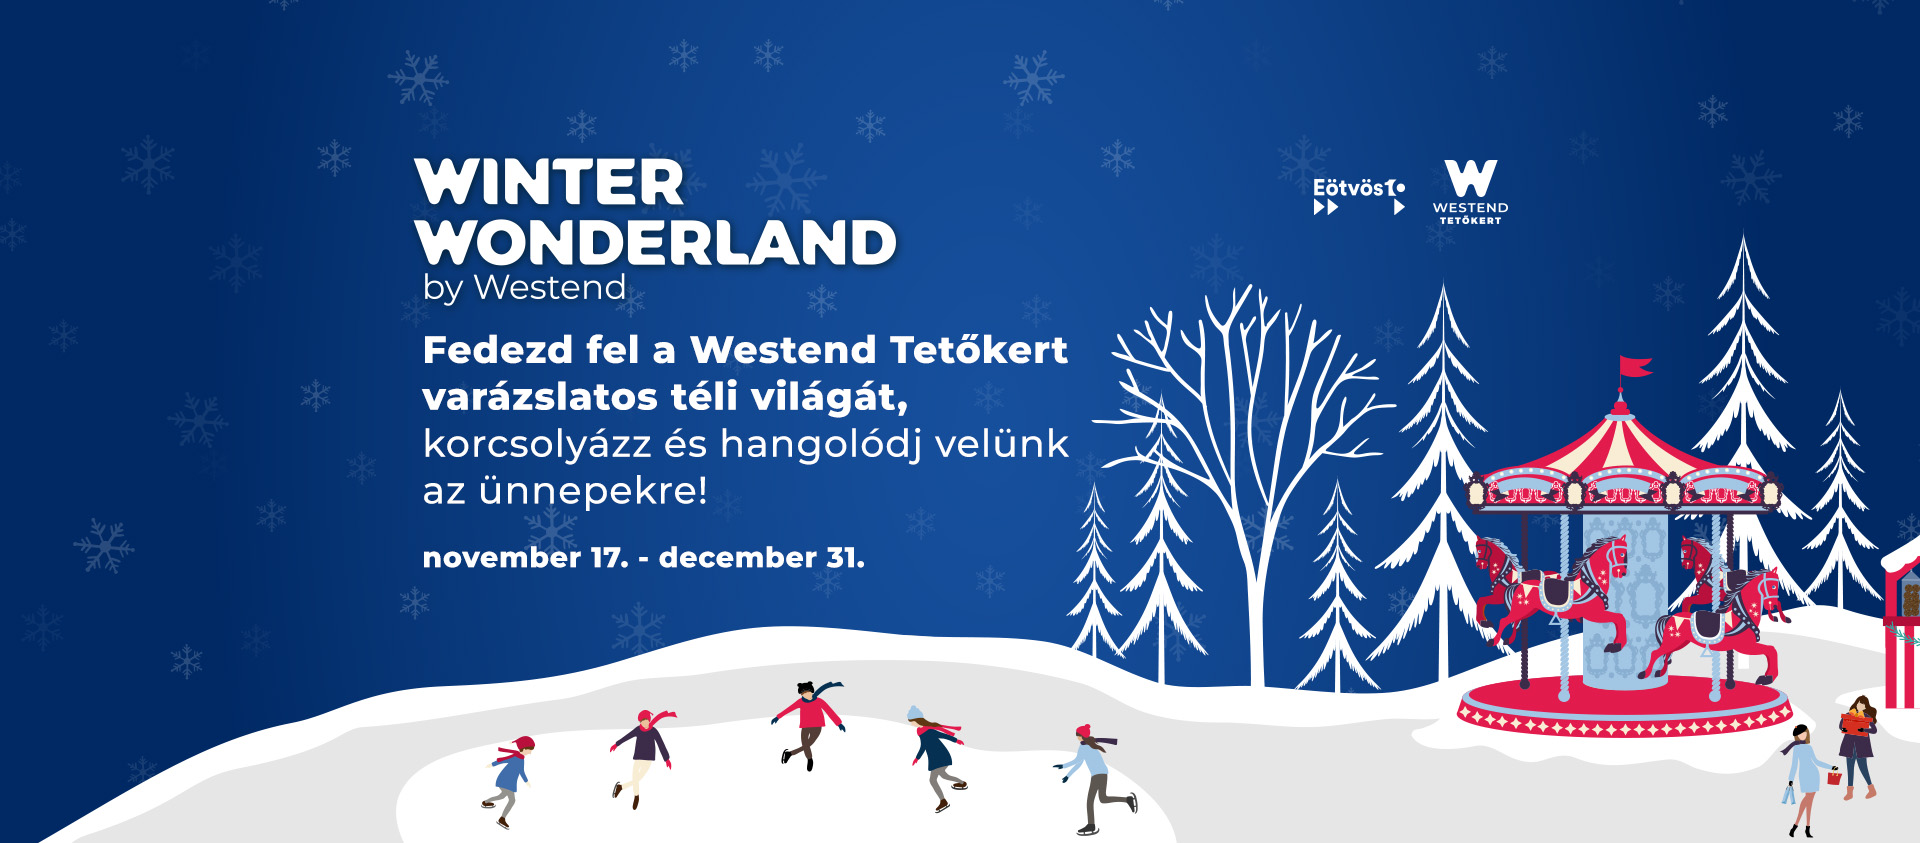 Winter Wonderland by Westend, téli csodavilág a város felett